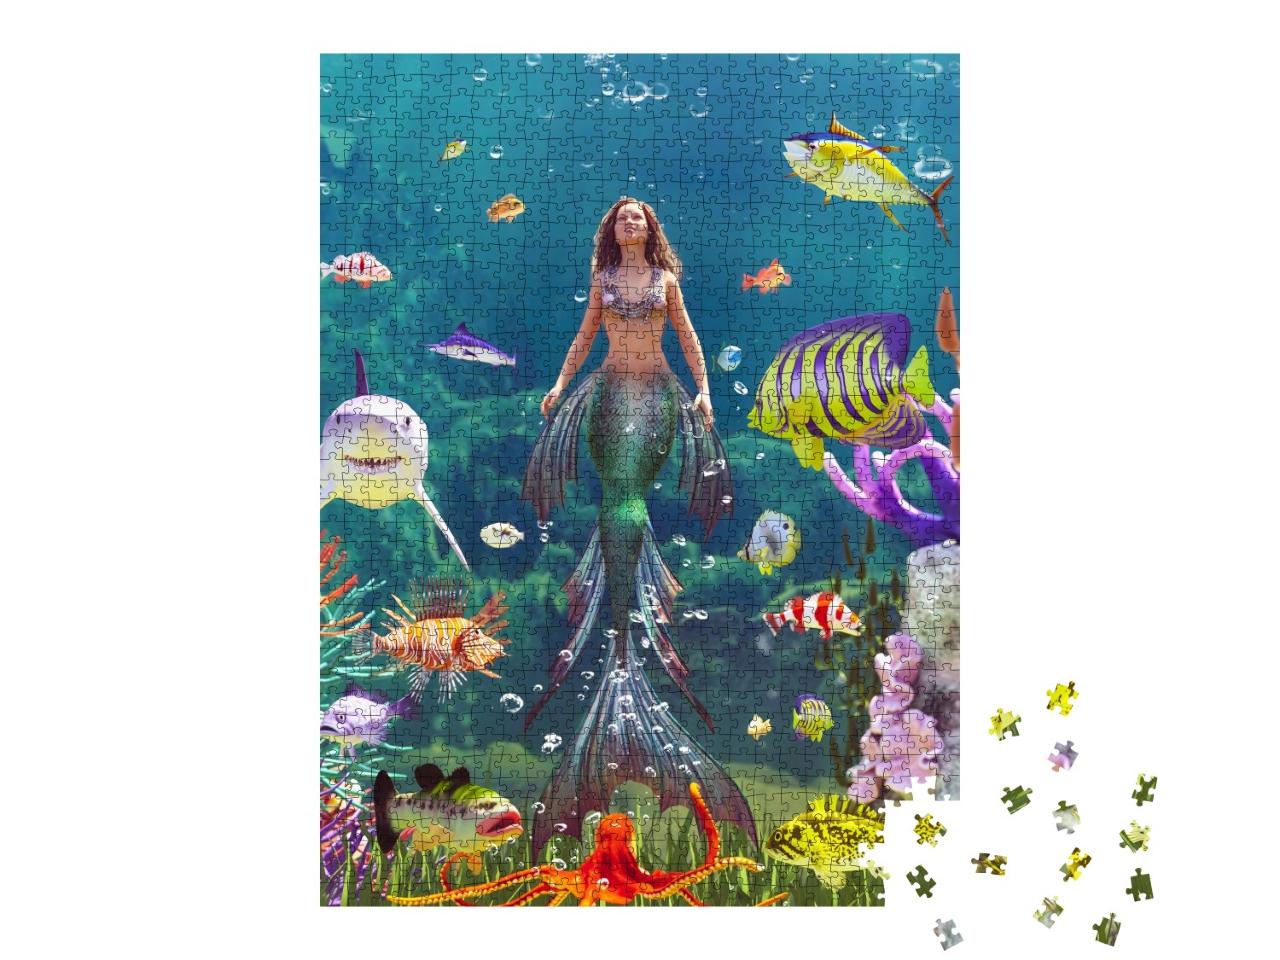 Puzzle de 1000 pièces « Nymphe des mers dans le monde sous-marin coloré »